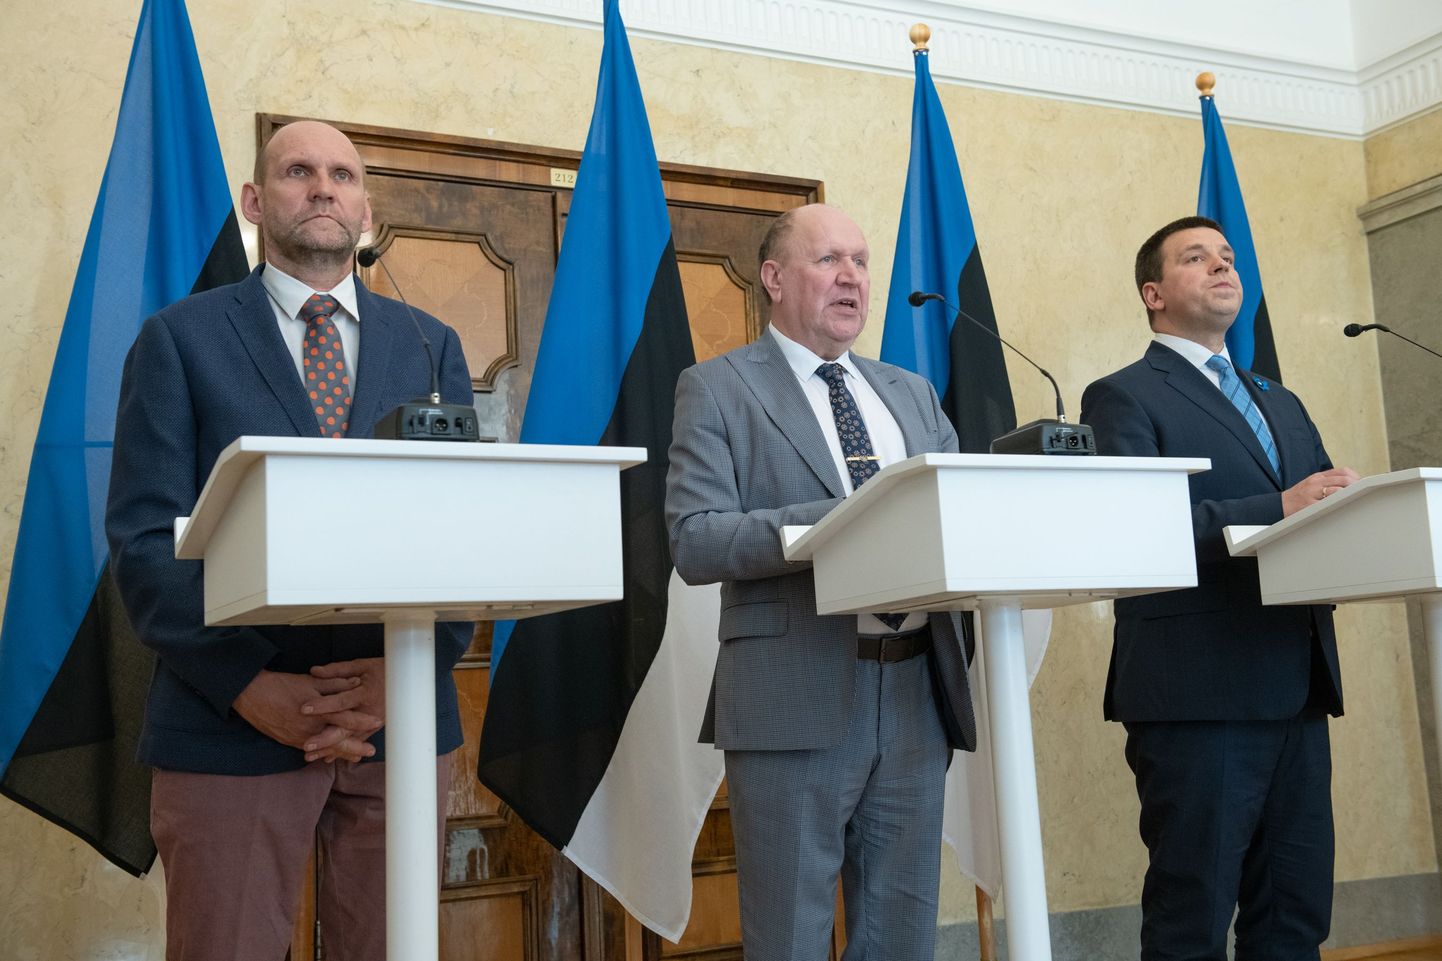 Valitsuspartnerite liidrid Helir-Valdor Seeder, Mart Helme ja Jüri Ratas.